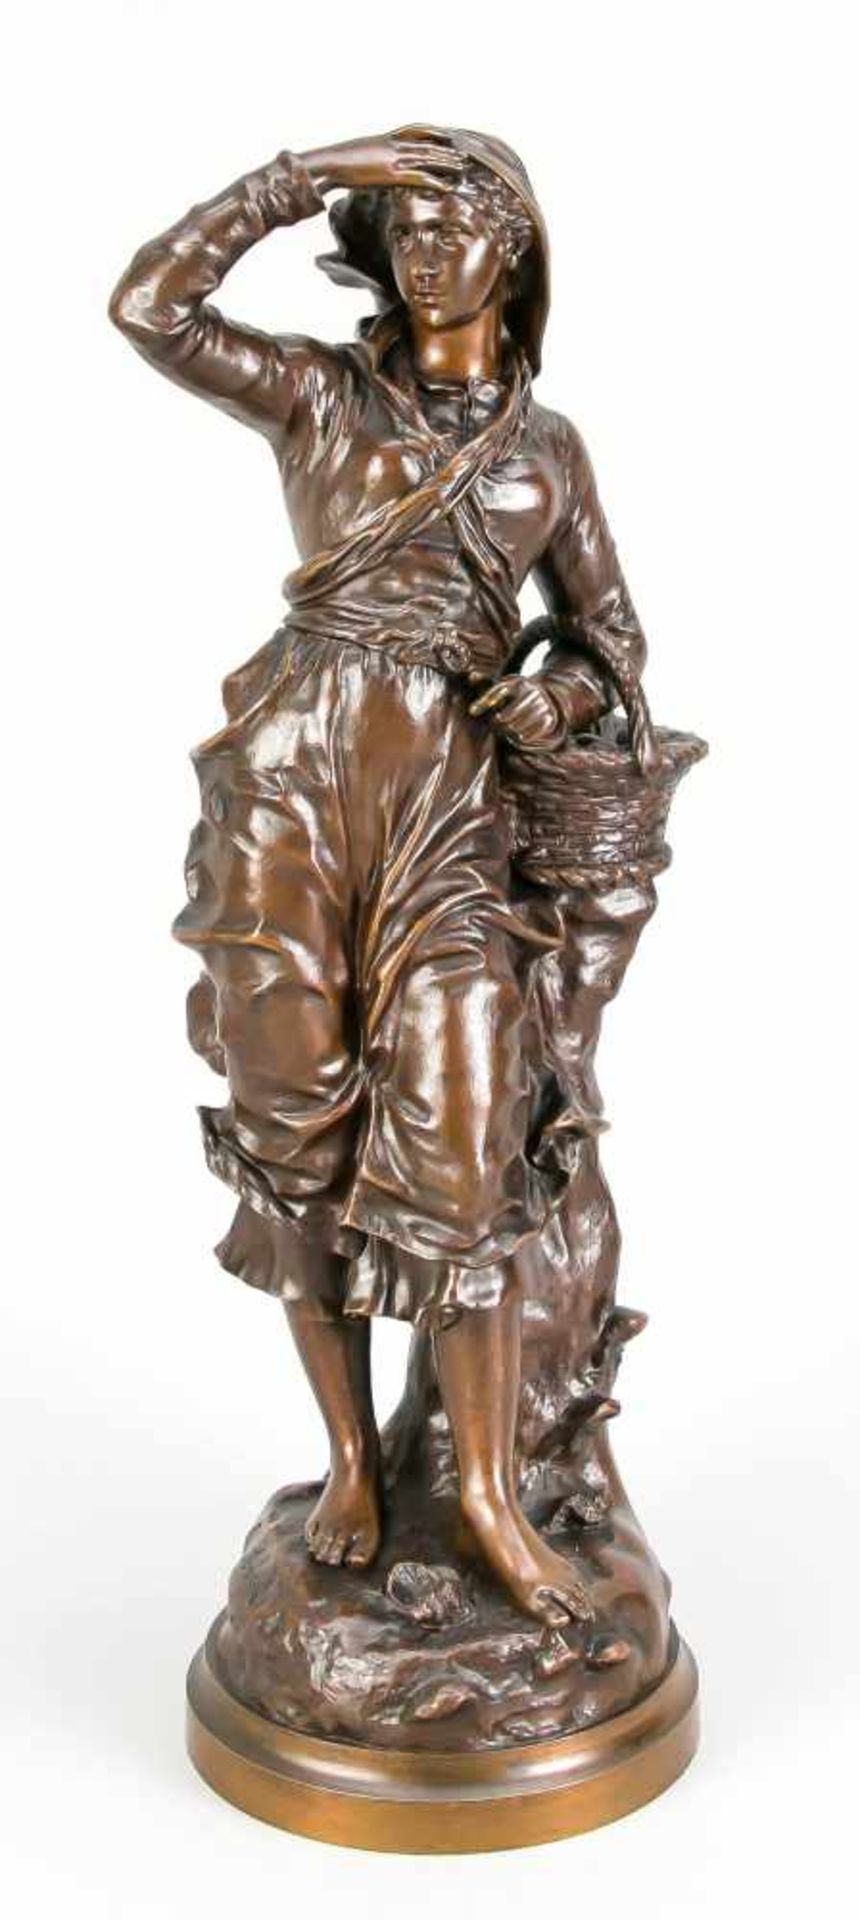 Charles Anfrie (1833-1905), Muschelsammlerin, braun patinierte Bronze, im runden Stand